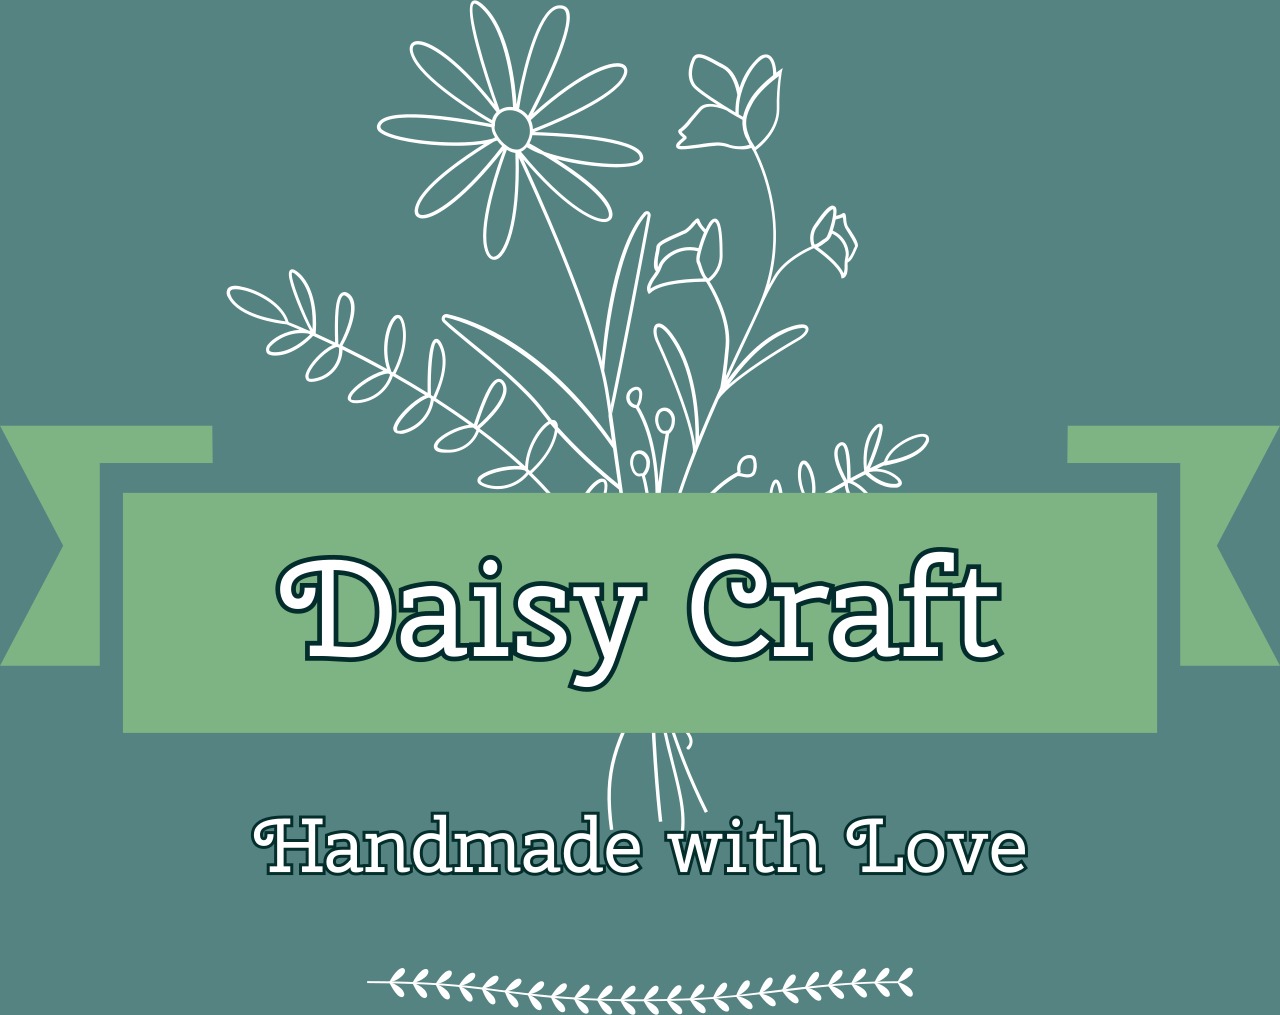 Daisy Crafts's logo